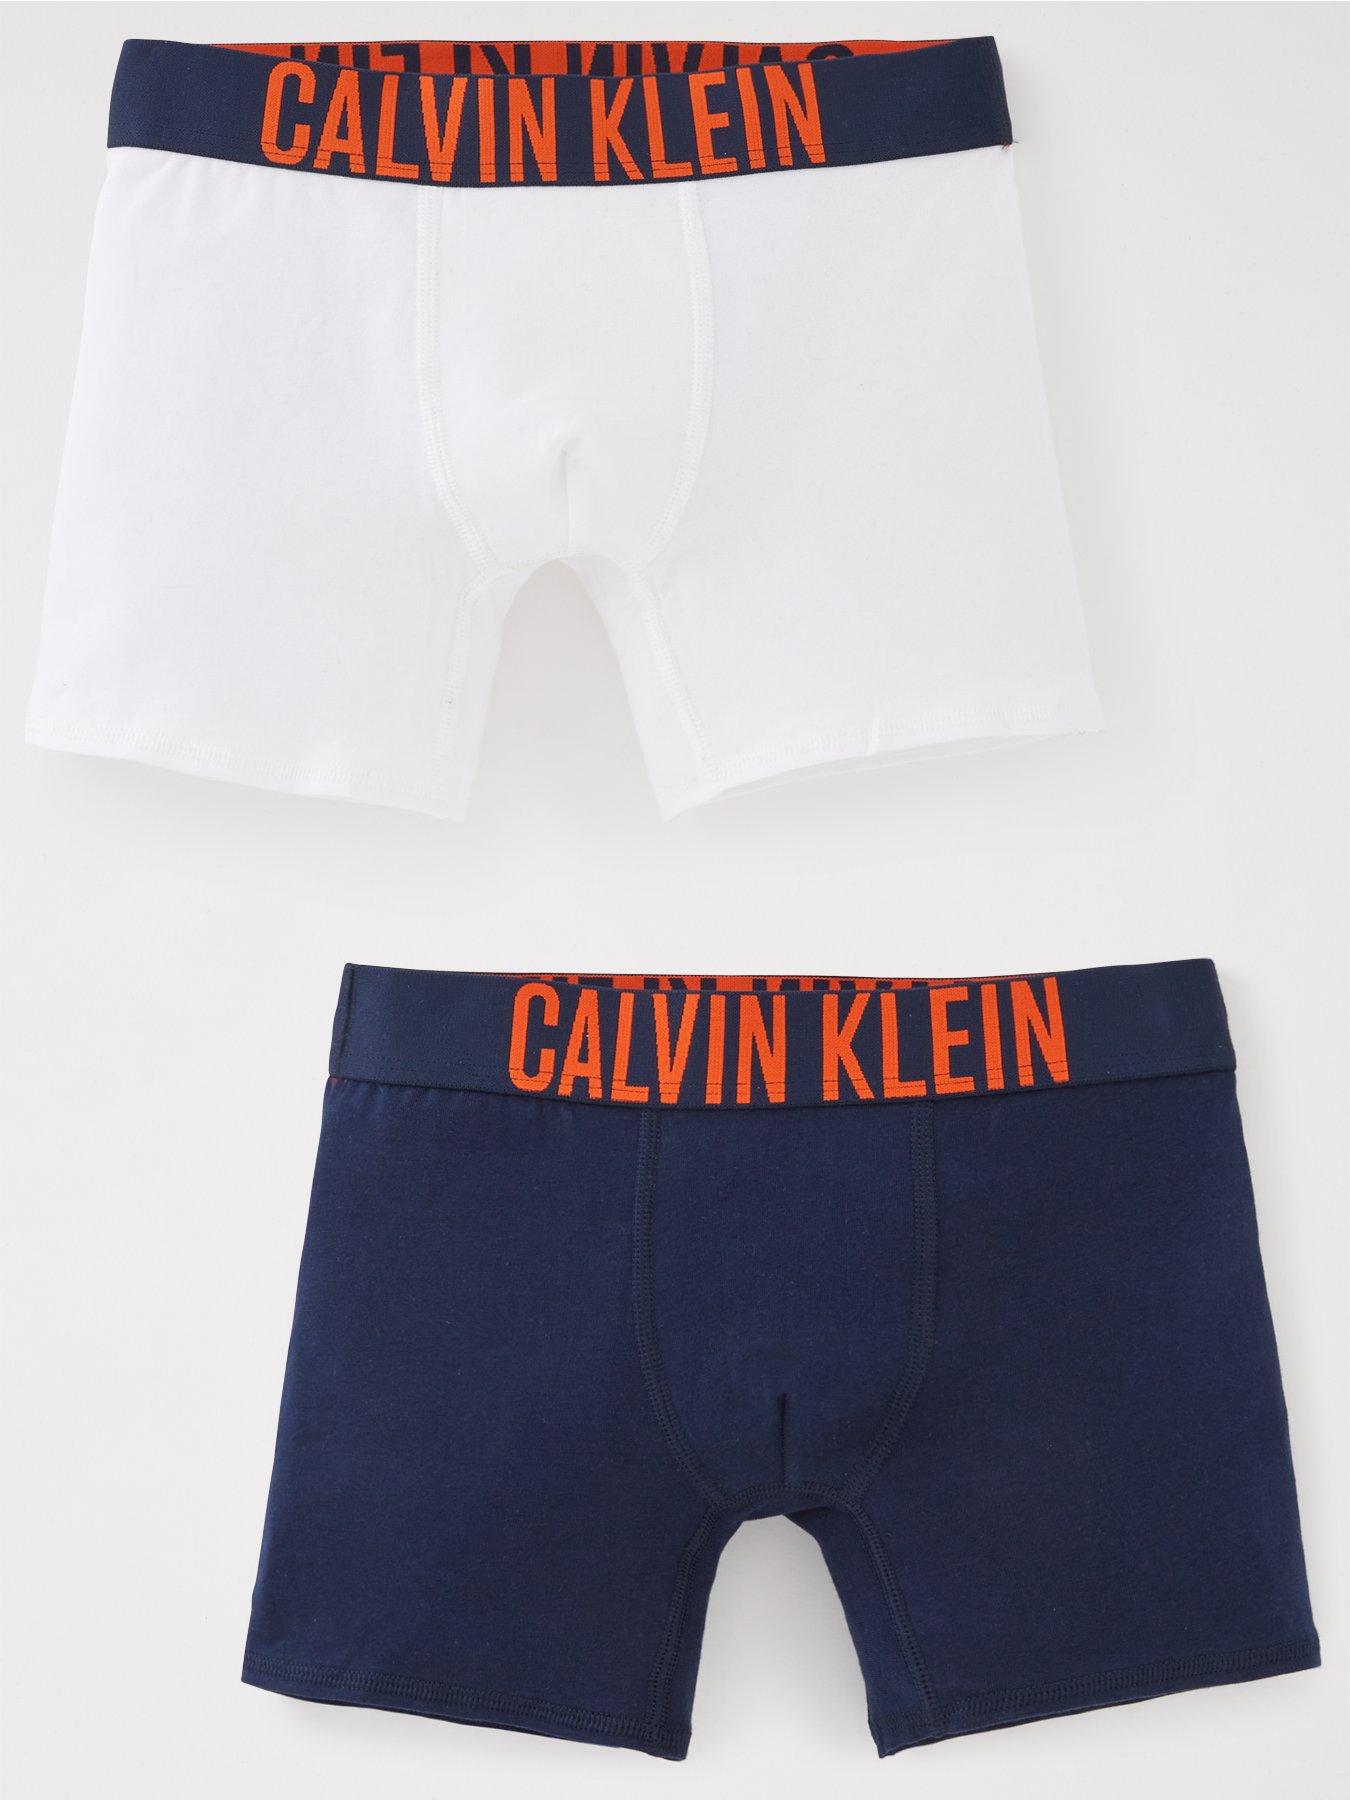 Calvin klein | Underwear & socks | Boys clothes | Child & baby | Very  Ireland